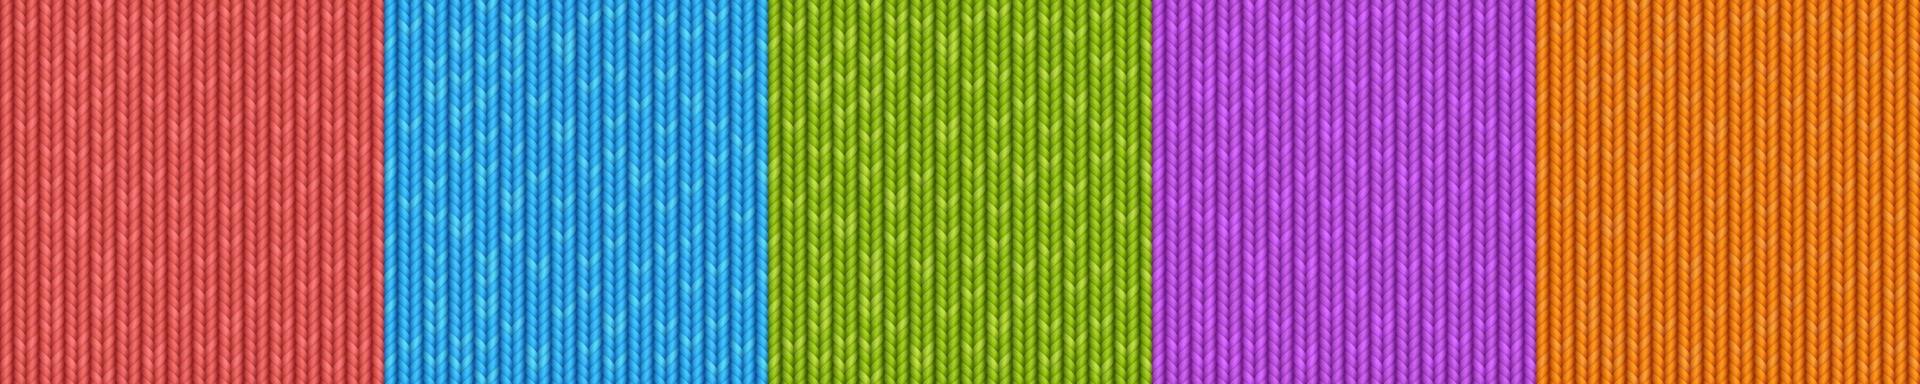 tricot de laine, texture de tissu à tricoter vecteur